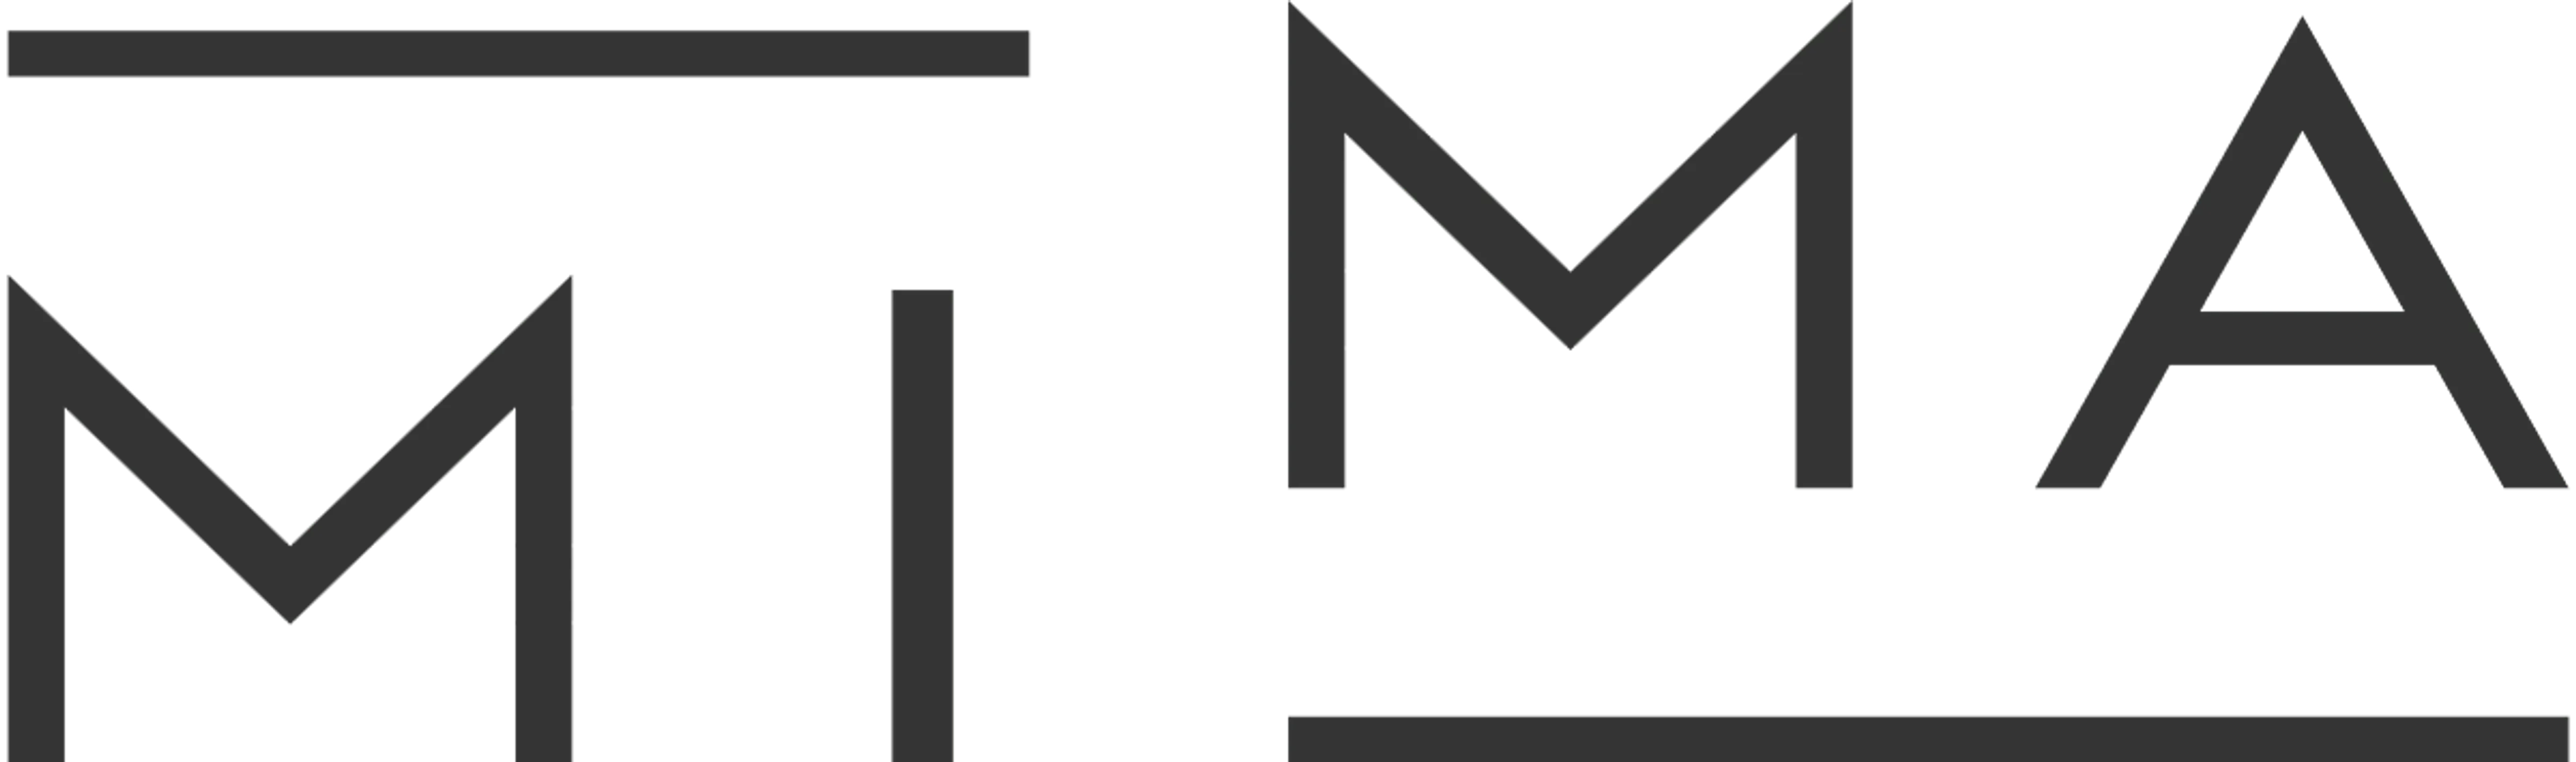 NAMJEŠTAJ MIMA logo